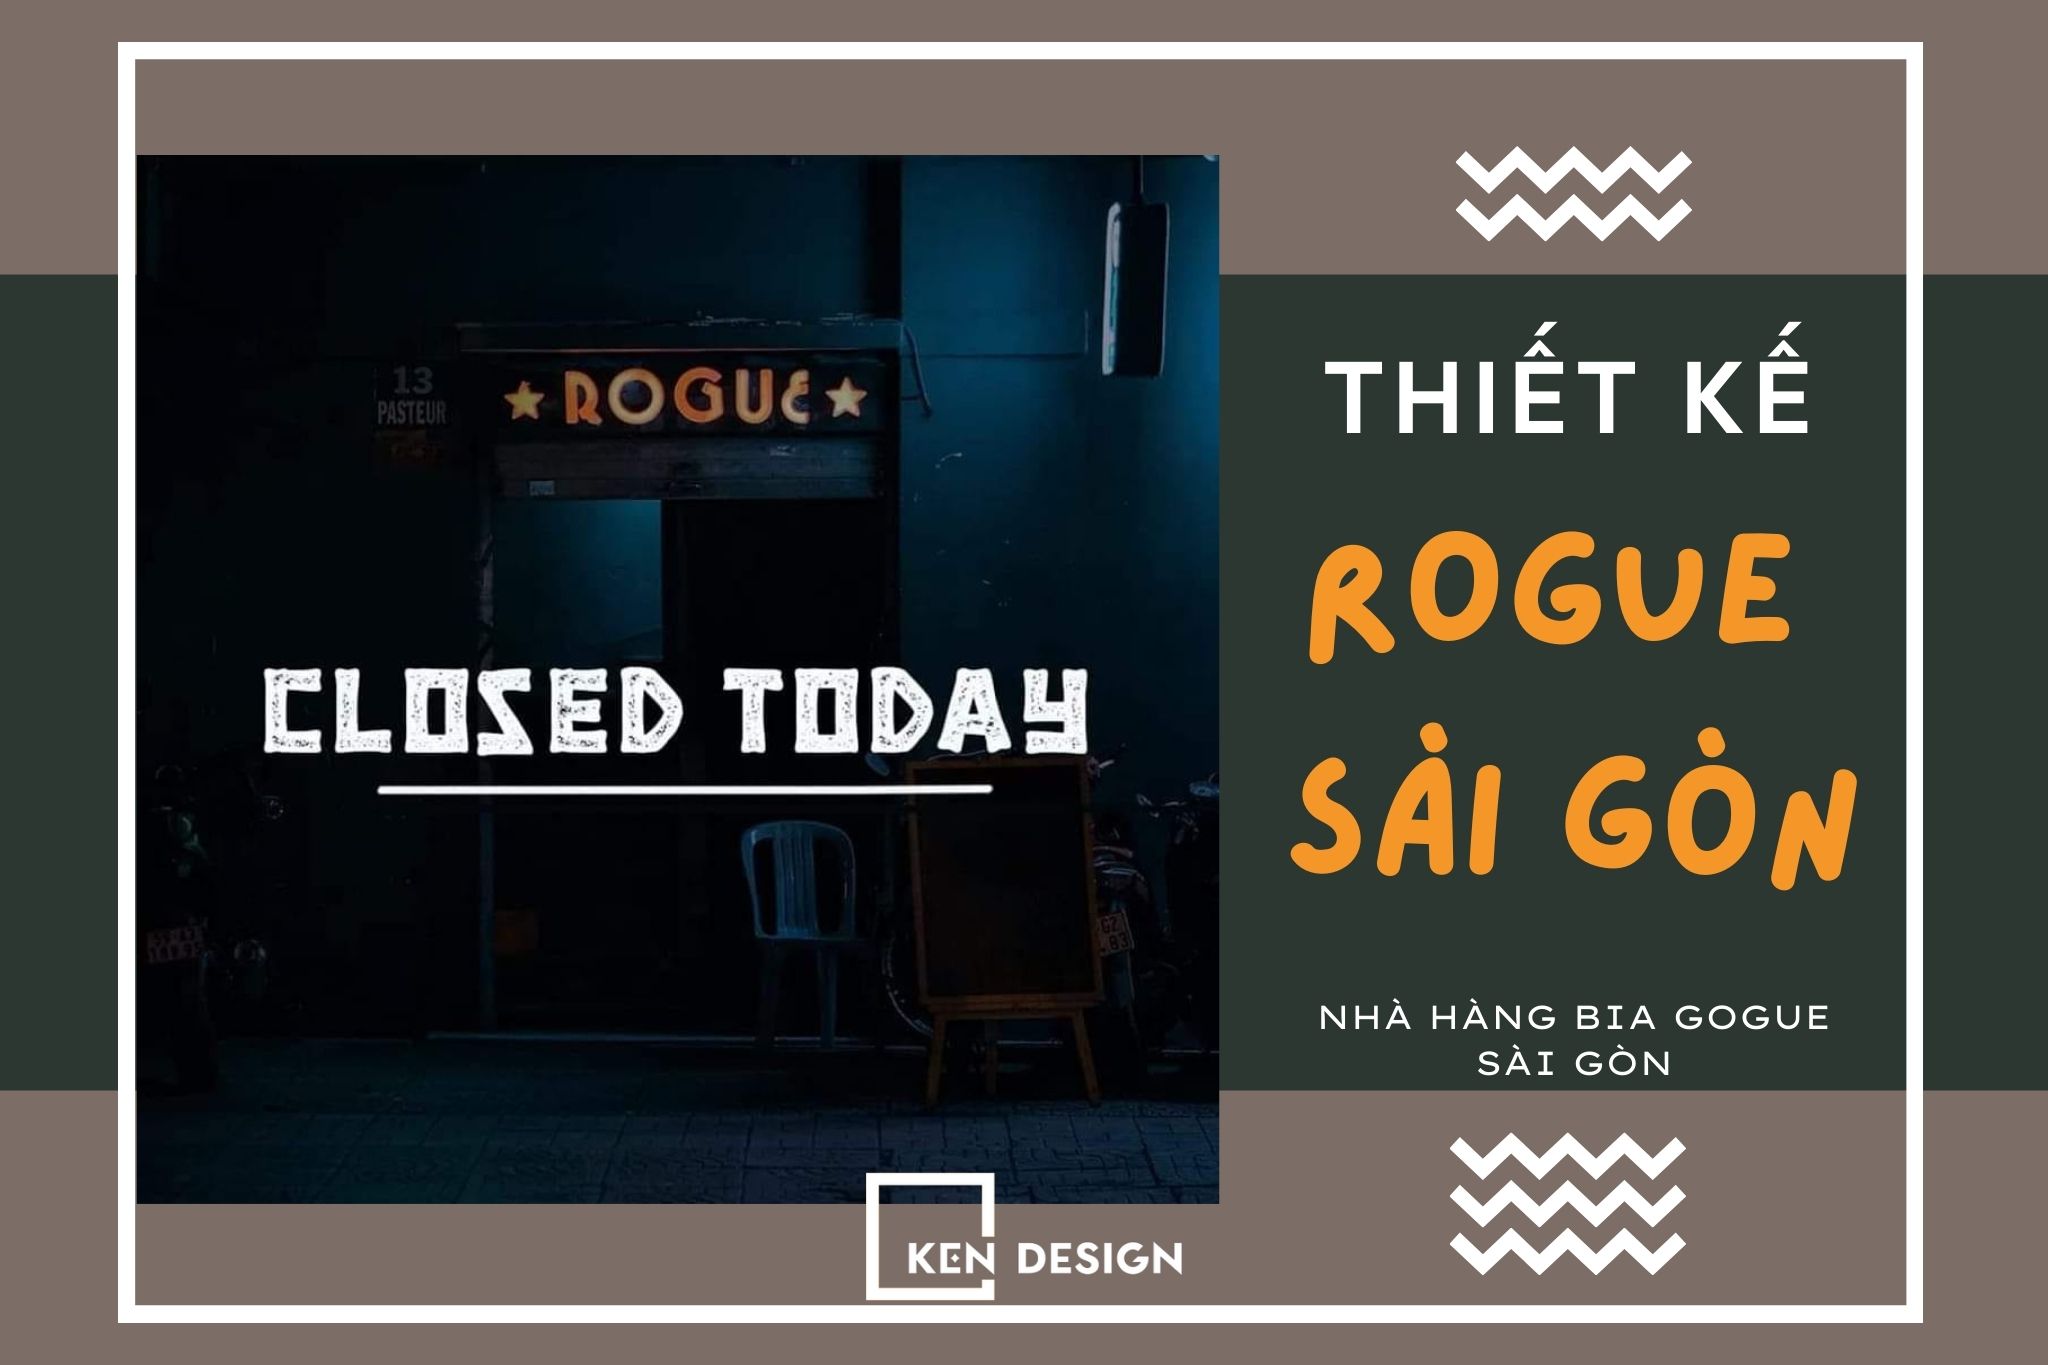 Thiết kế Rogue Saigon - Kiến trúc cổ điển sang trọng và đẳng cấp